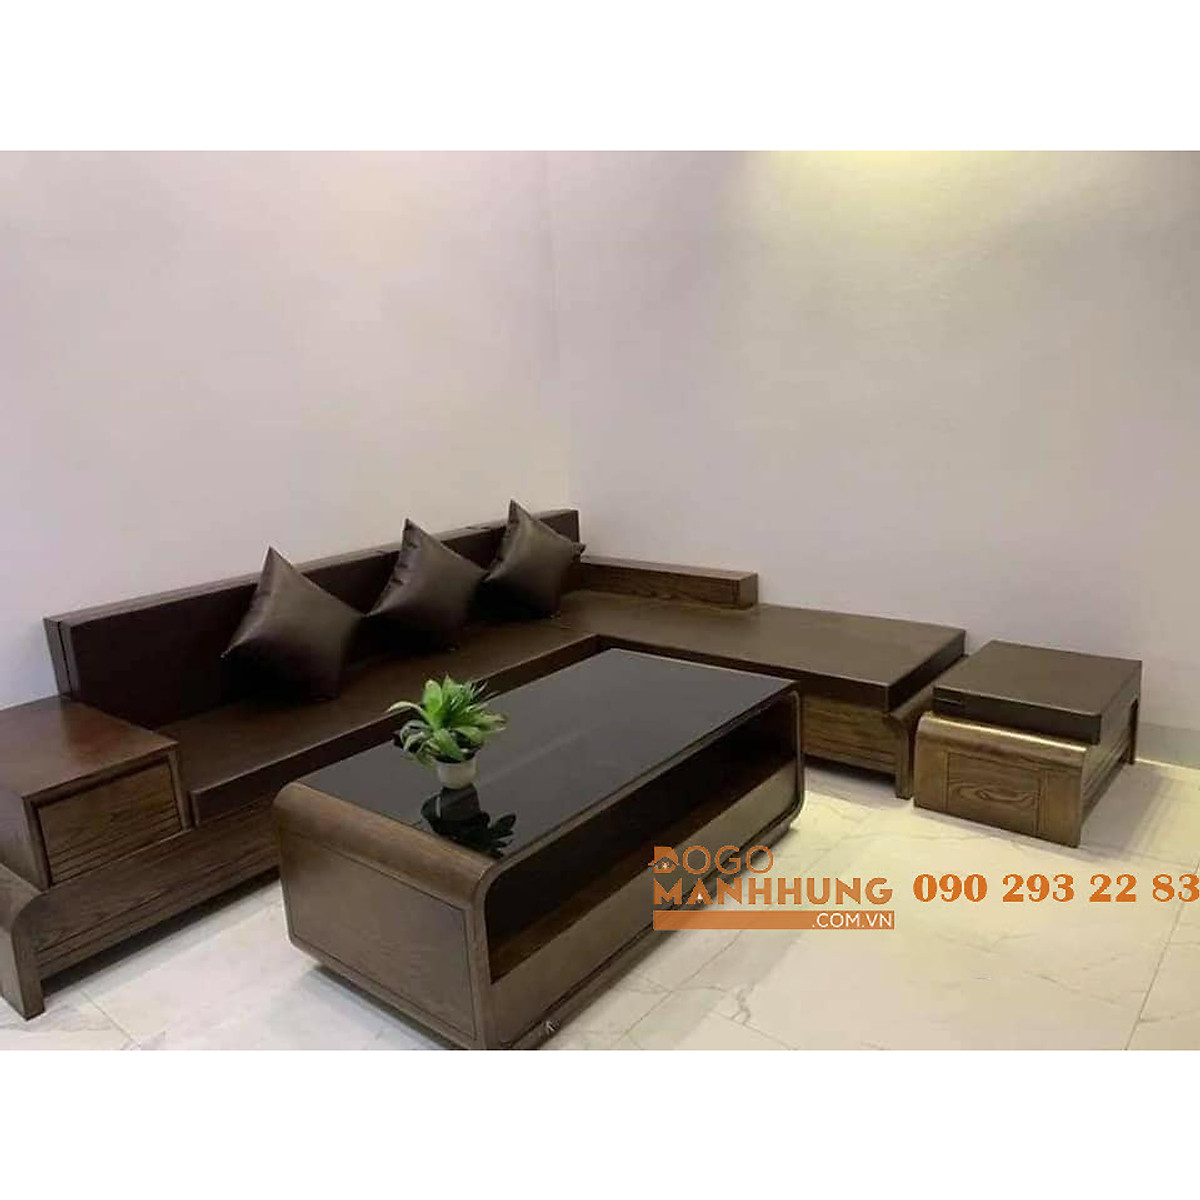 Một bộ bàn ghế Sofa gỗ sồi chất lượng sẽ mang đến sự thoải mái và êm ái cho không gian sống của bạn. Nhấn vào hình ảnh để khám phá thêm về bàn ghế Sofa gỗ sồi.